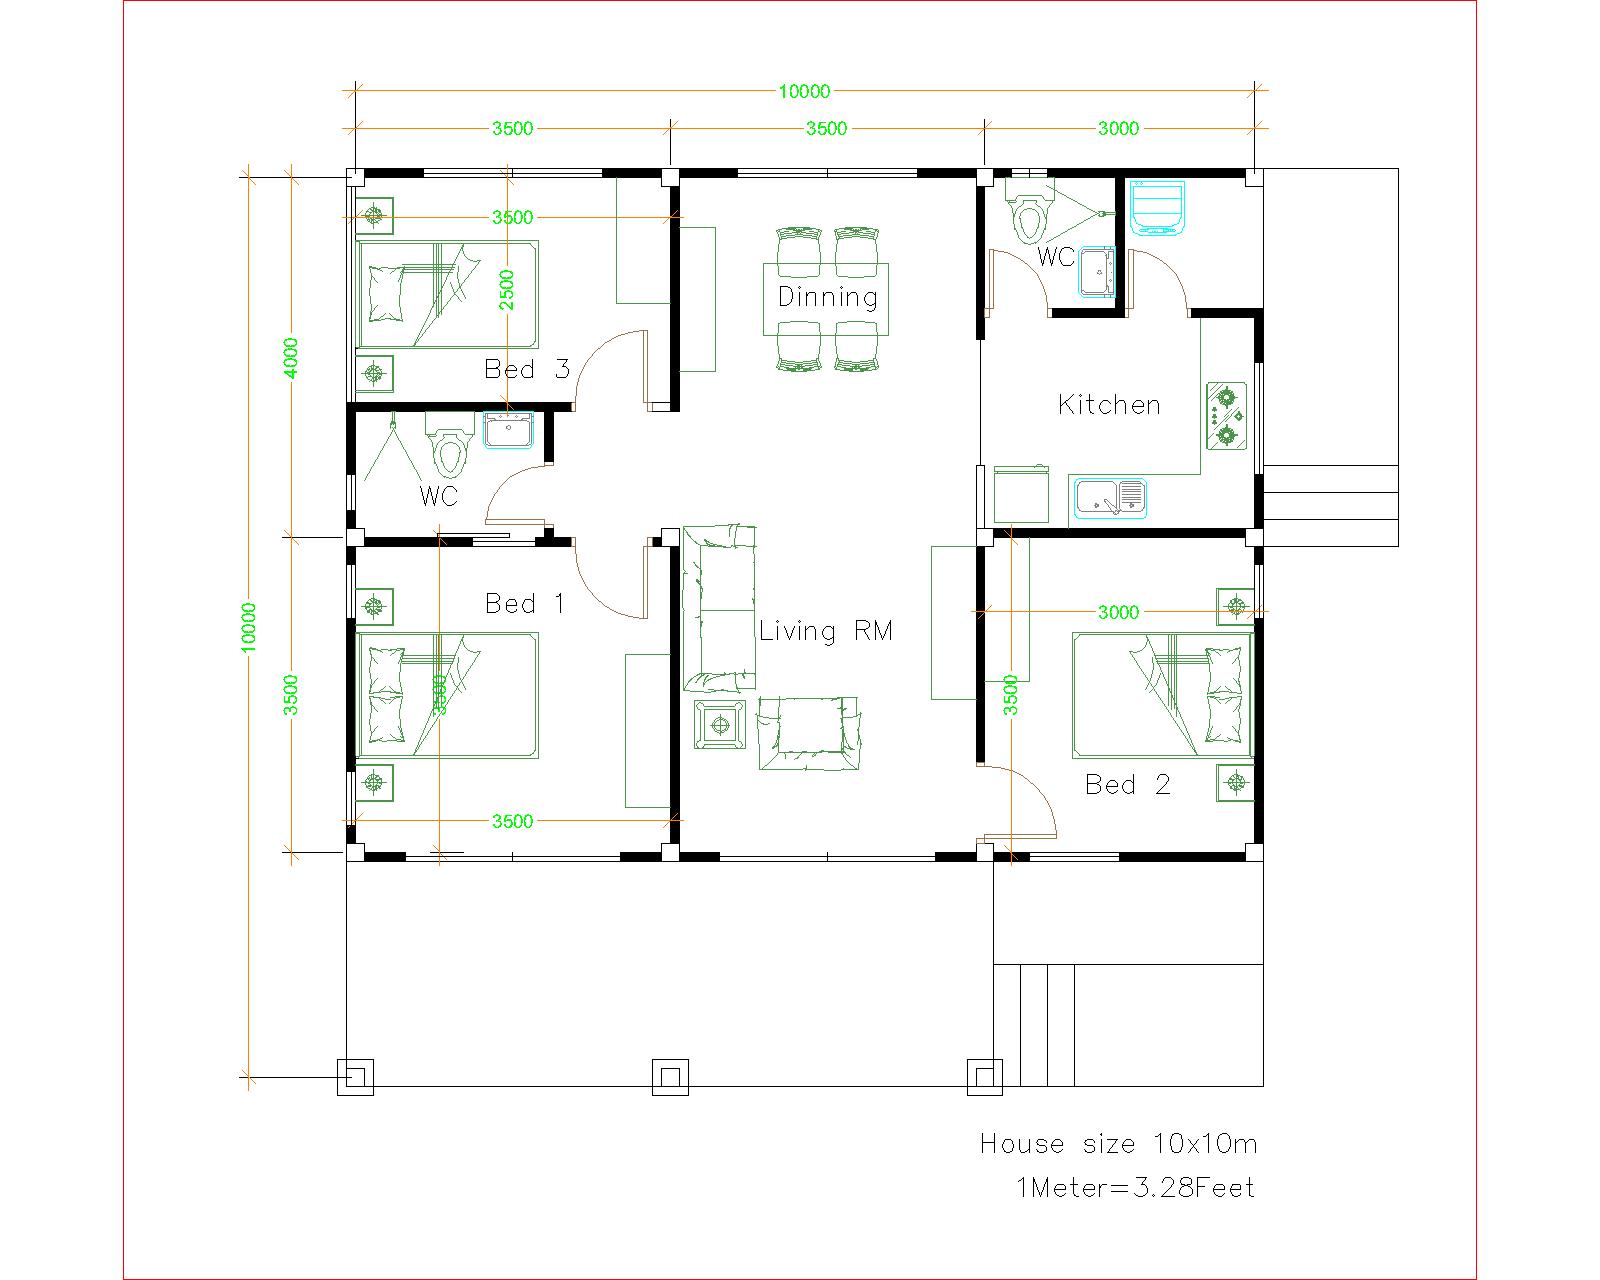 House Design 10x10 with 3 Bedrooms Hip Roof floor plan